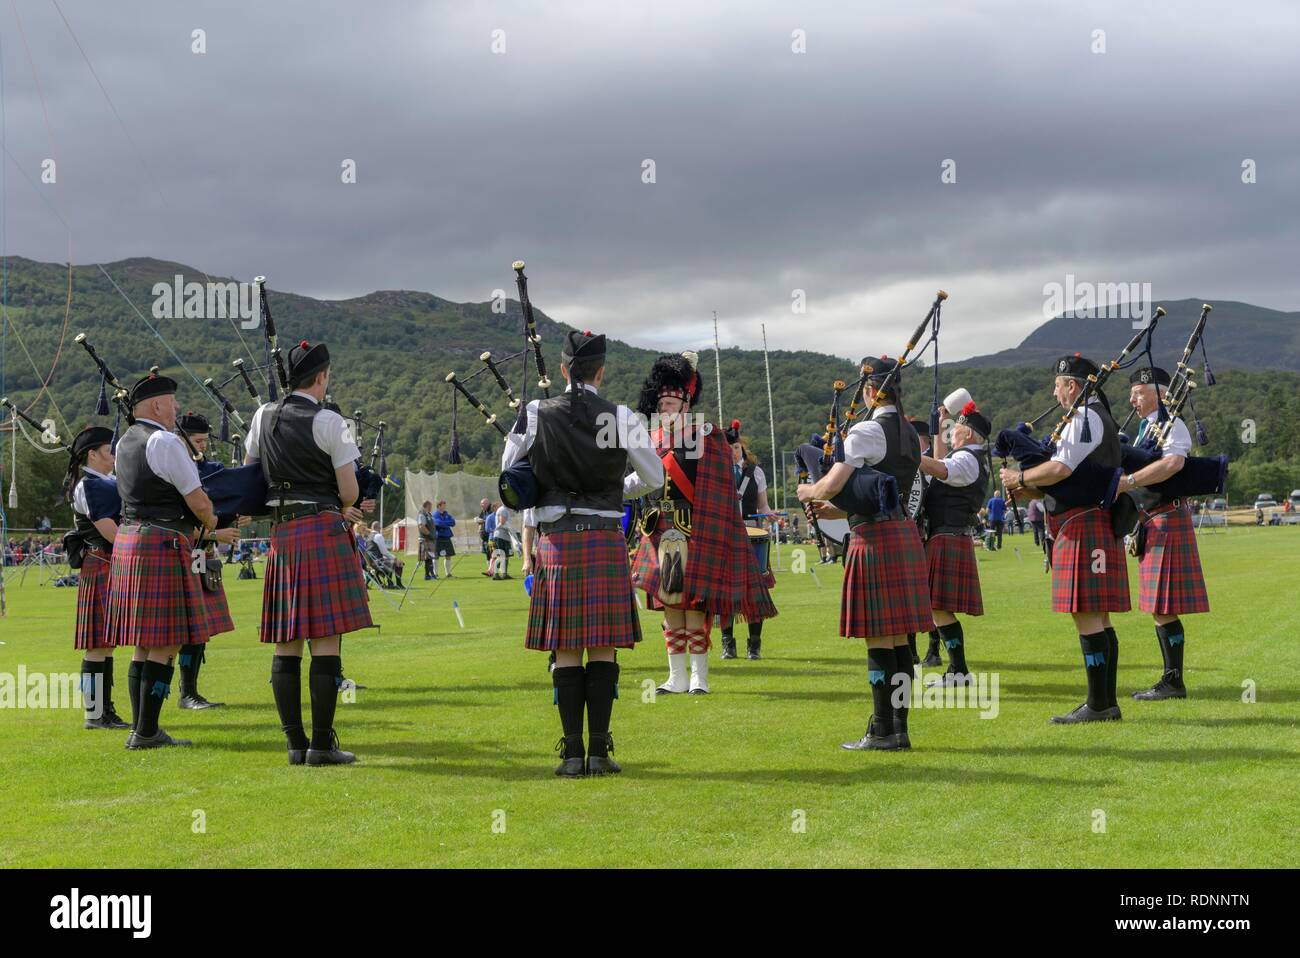 Bandas de tubo de la competencia, los Highland Games, Newtonmore, Scotland, Reino Unido Foto de stock